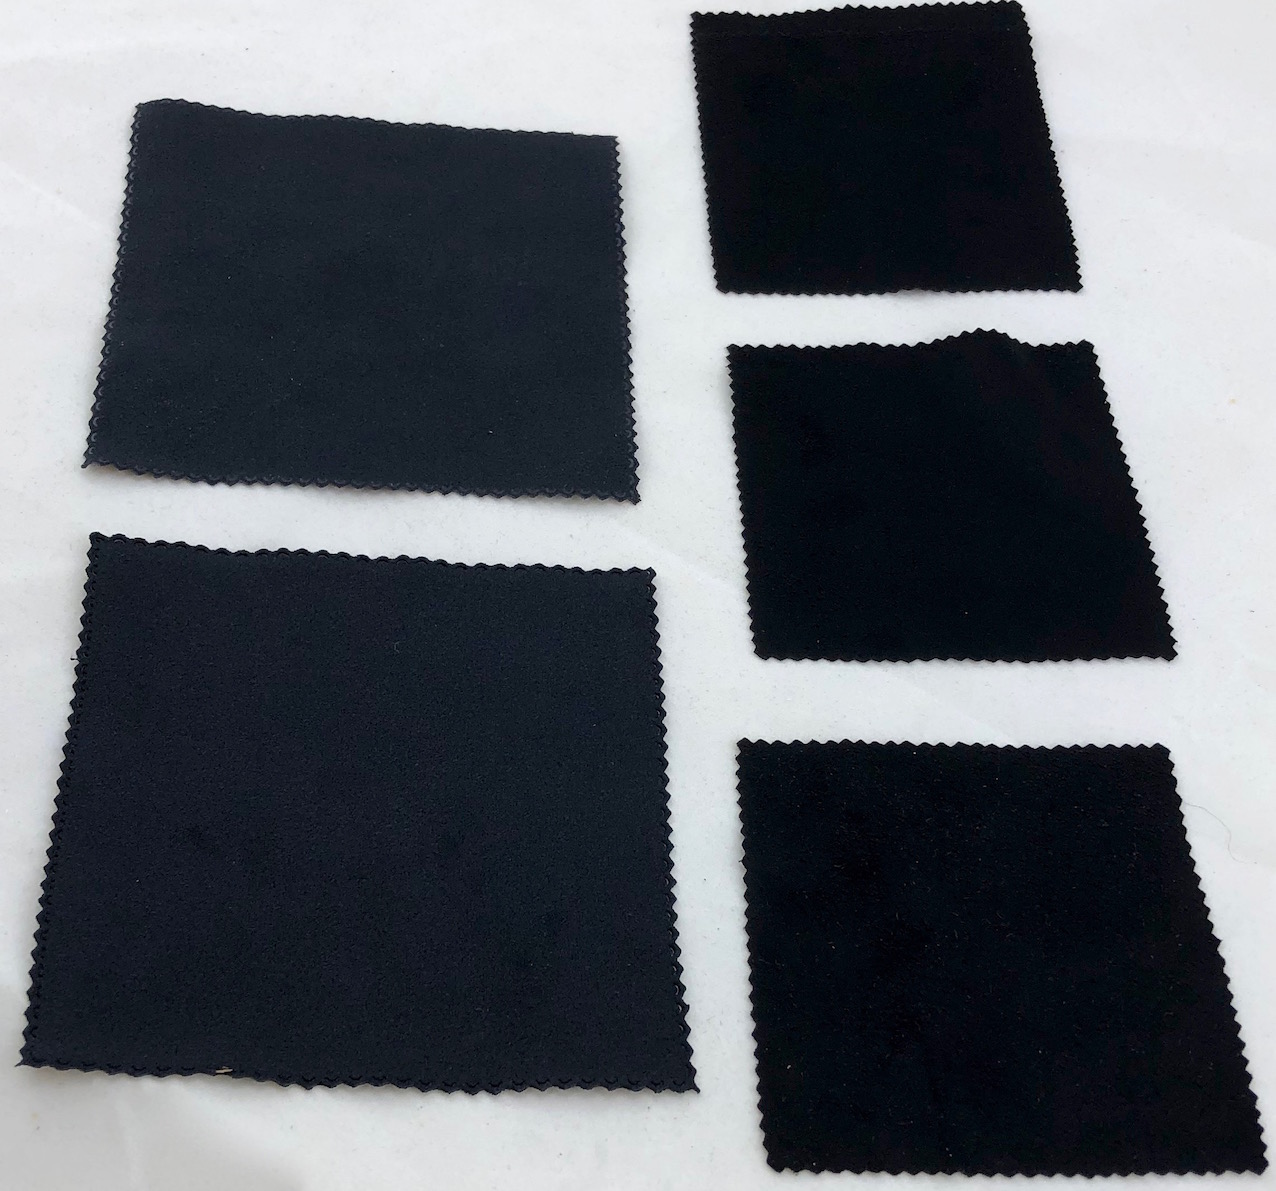 Square small and medium polishing cloths